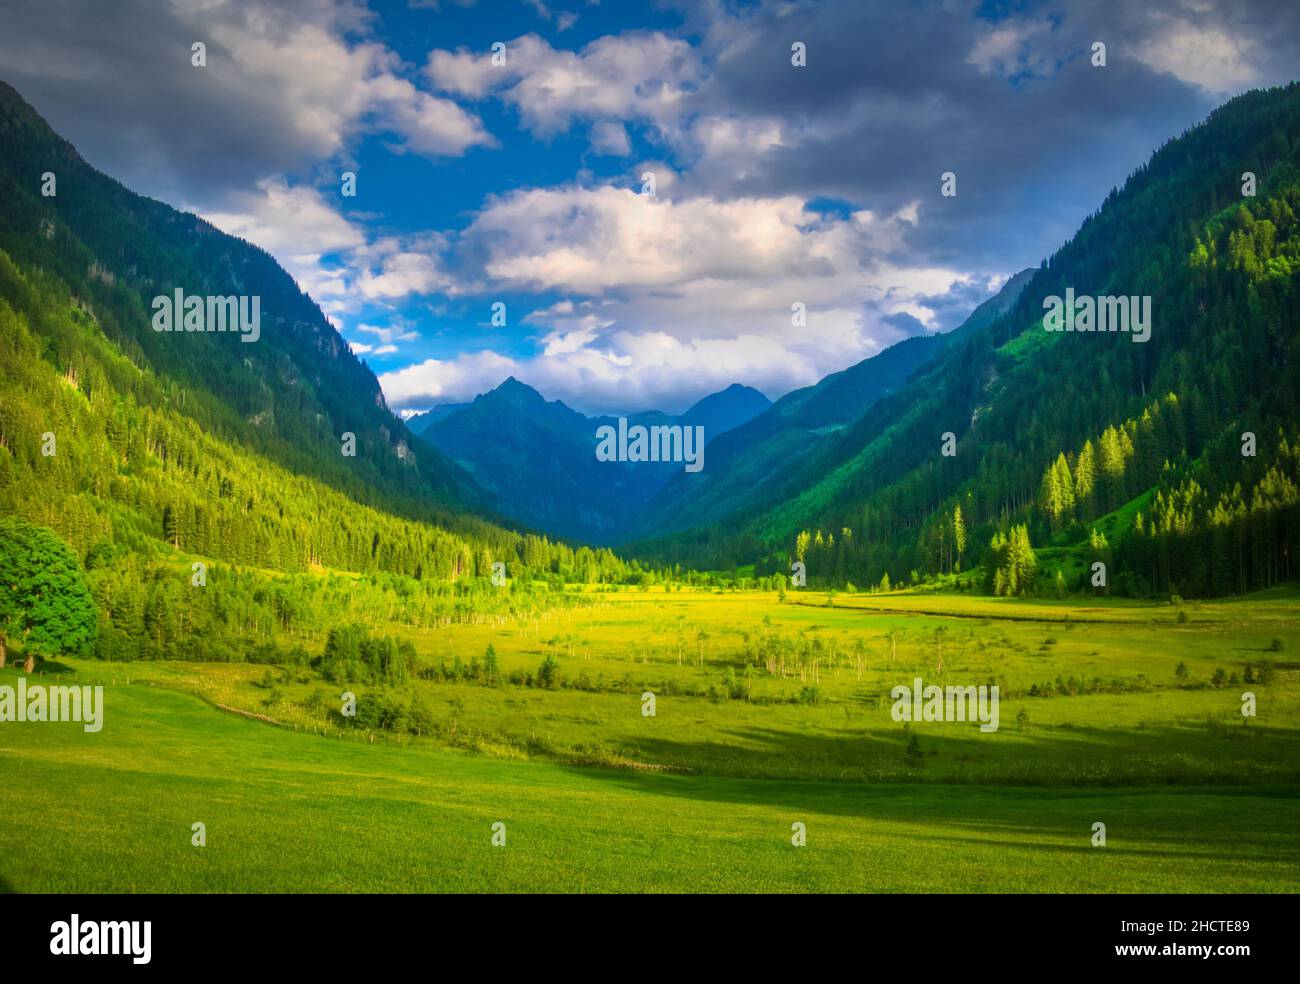 Paesaggio montano panoramico con belle valli e vette di montagna, erba verde, cielo con nuvole. Paesaggio estivo. Verde, blu. Schlamminger tauern, Alpi, Foto Stock